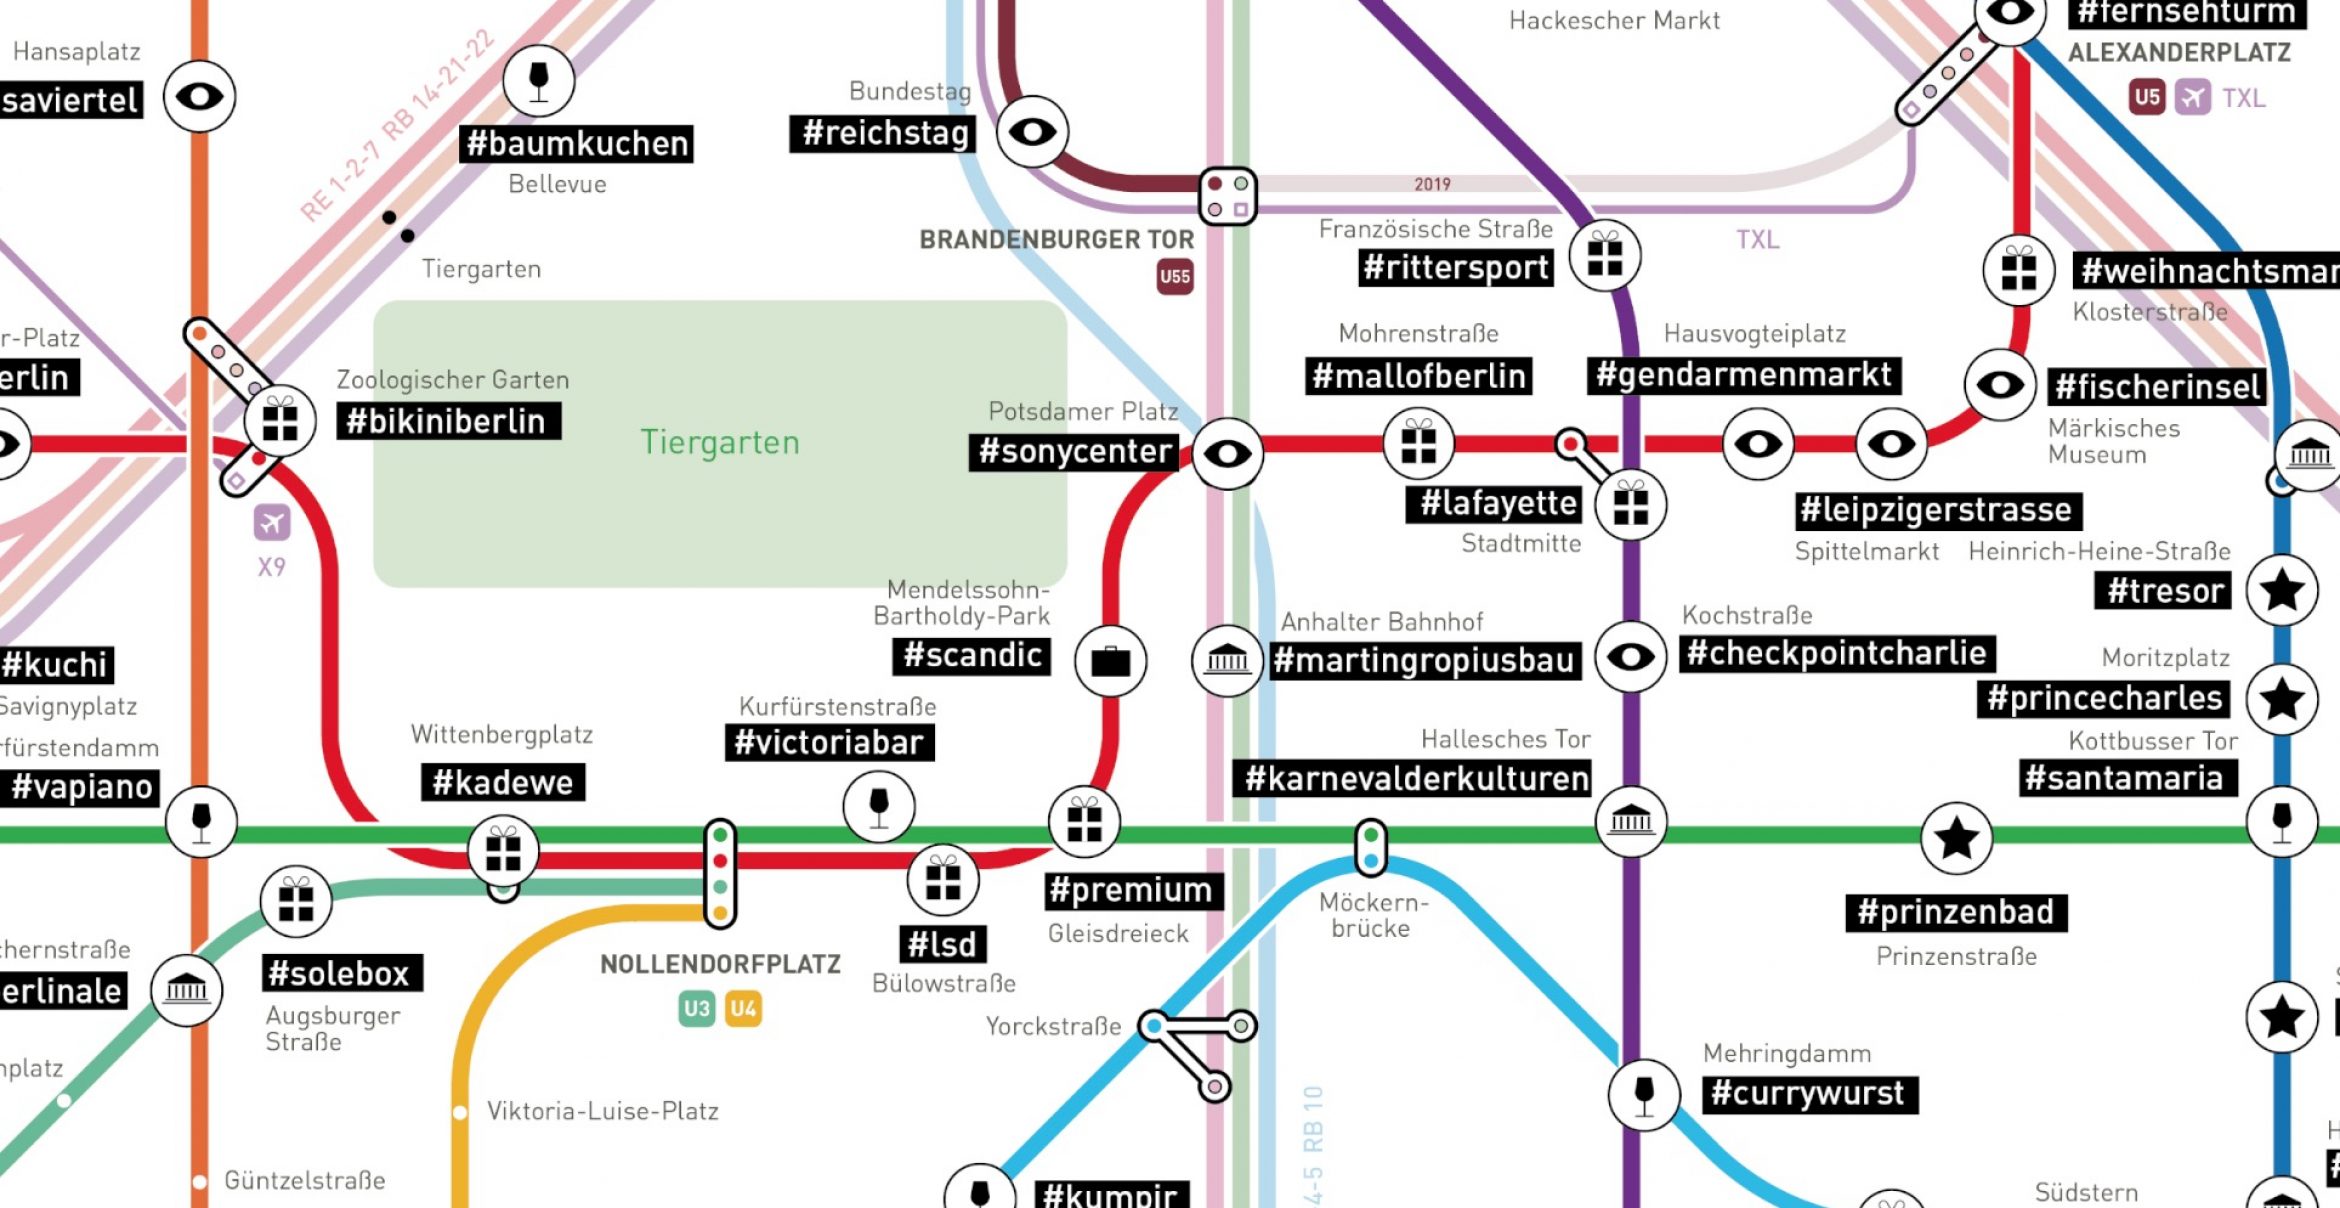 #tagsandthecity: Diese Karte zeigt die beliebtesten Hashtags in Berlin entlang des S- und U-Bahn Netzes